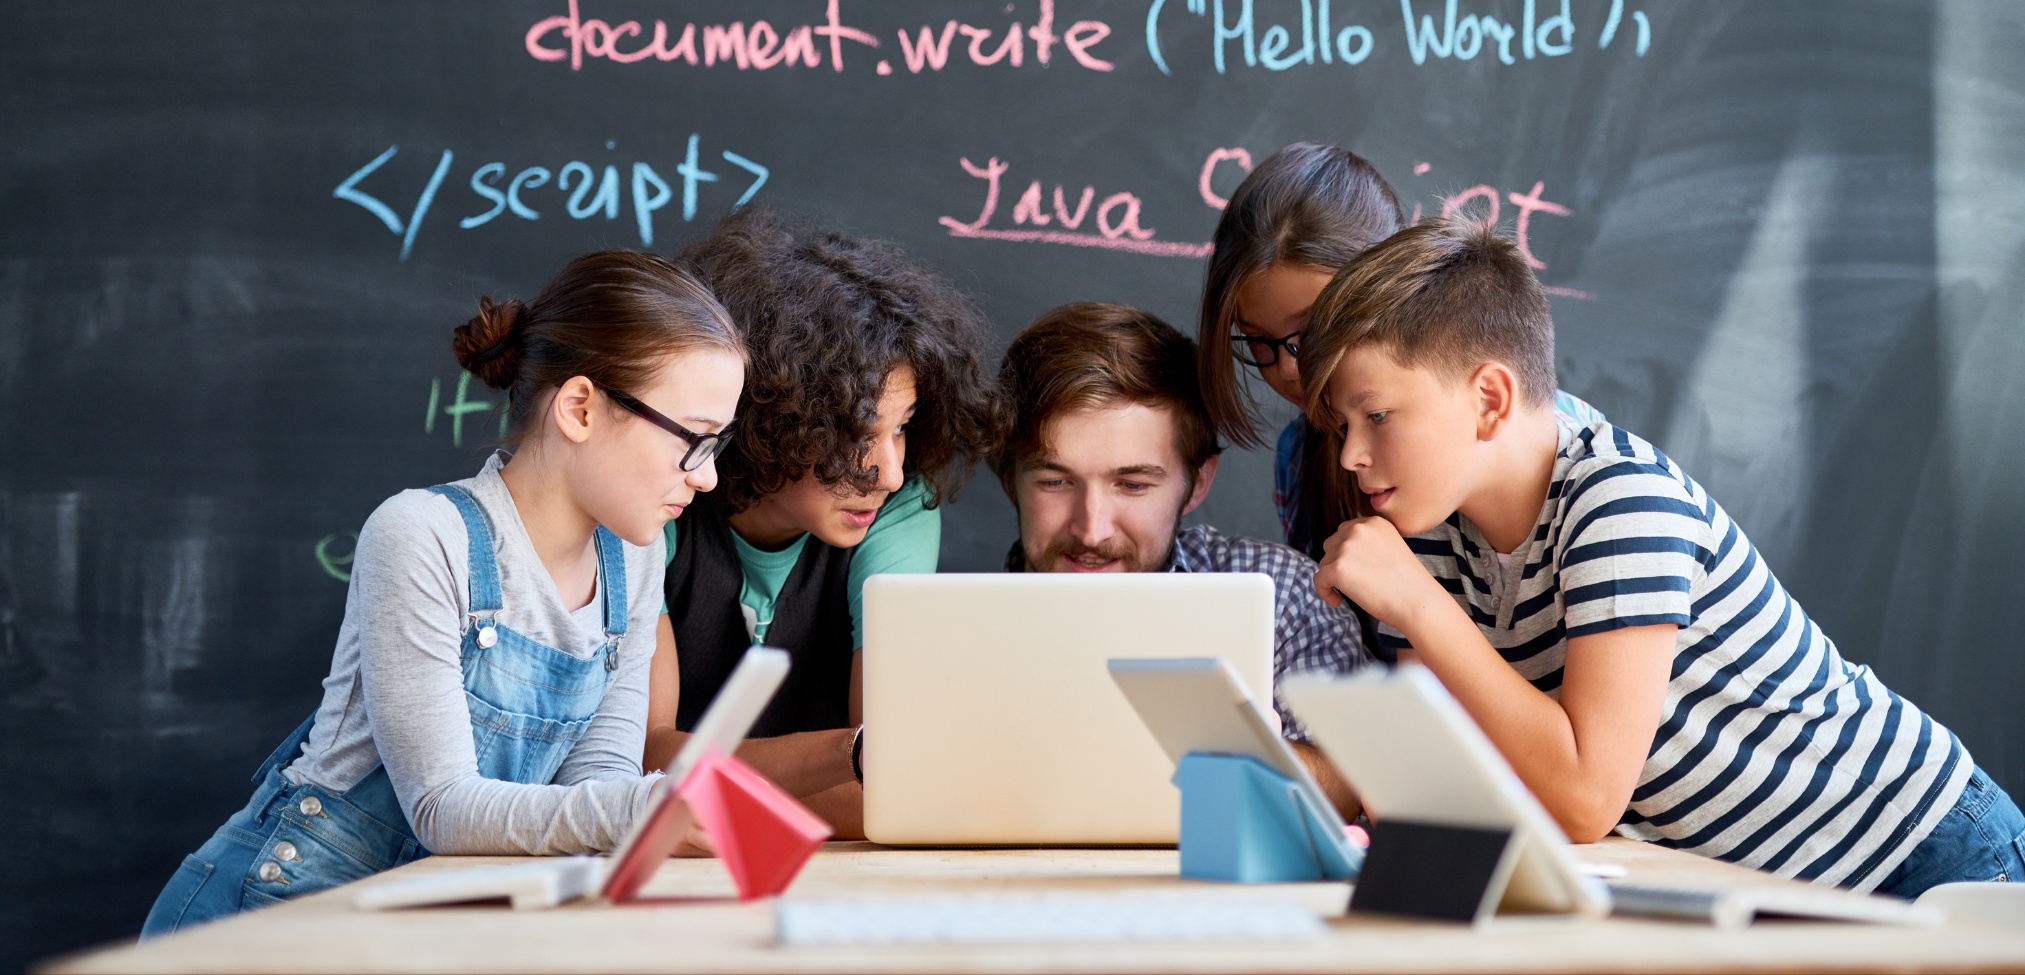 Imagen de portada de sección "Programas" en donde se visualizan personas en un aula, mirando a la pantalla de una notebook estudiando Programación